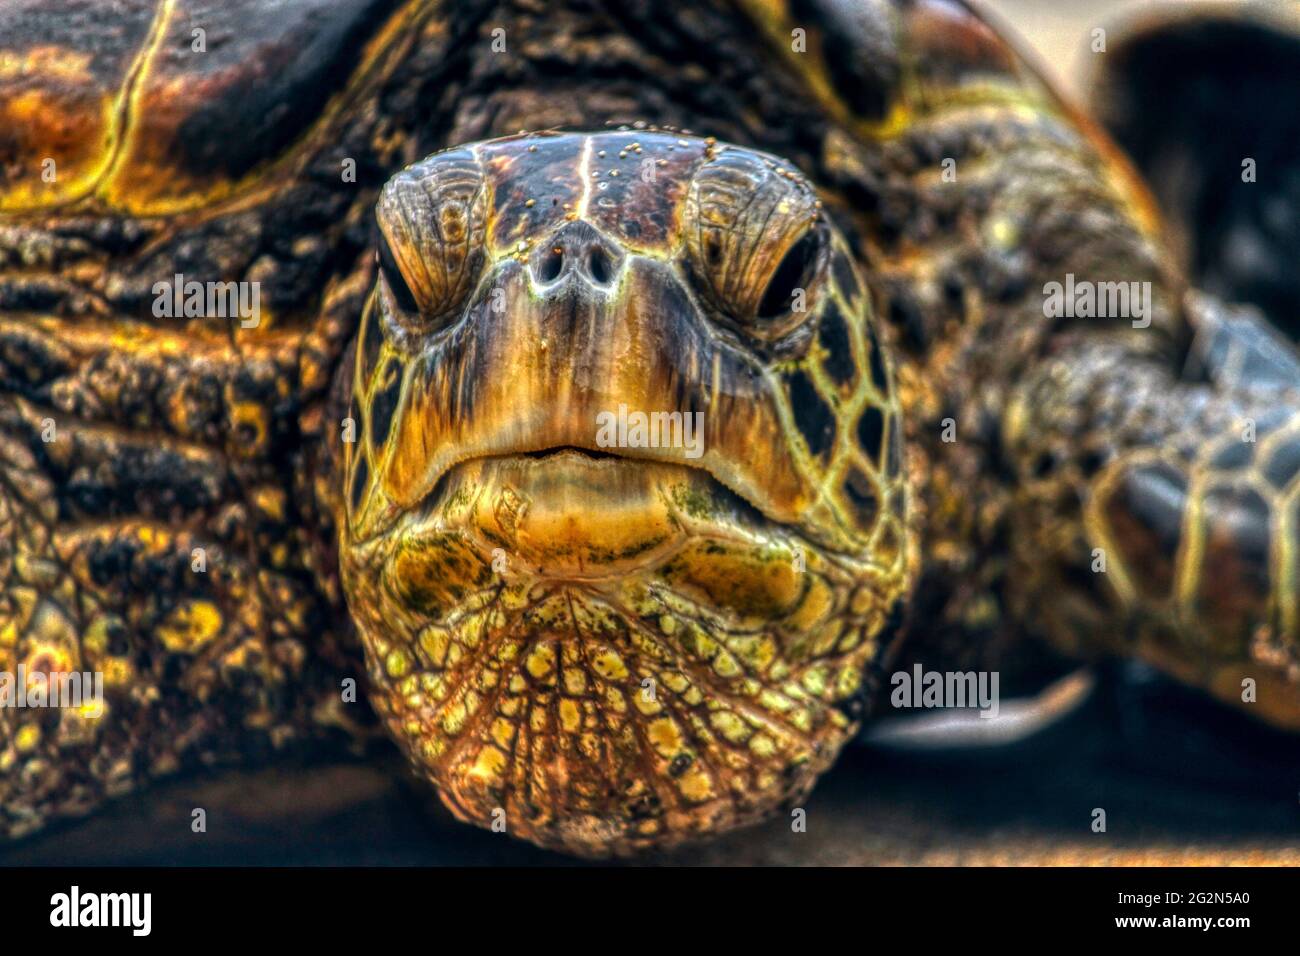 Grumpy old man - green sea turtle (honu) in Maui Hawaii Stock Photo